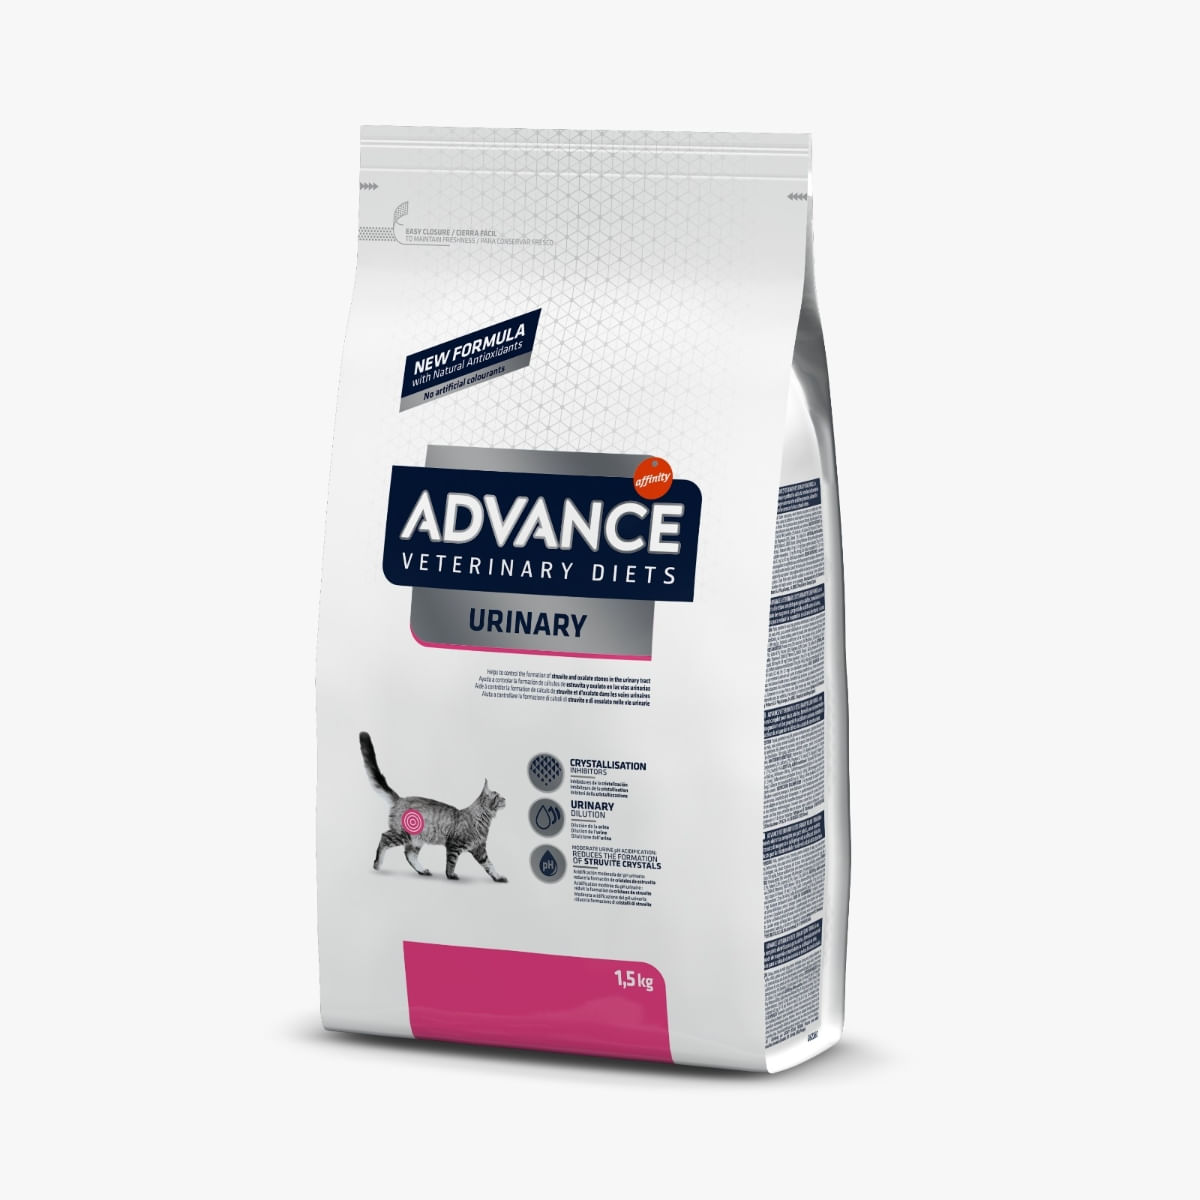 ADVANCE Veterinary Diets Cat Urinary, dietă veterinară, hrană uscată pisici, afecțiuni urinare ADVANCE Veterinary Diets Urinary, dietă veterinară pisici, hrană uscată, sistem urinar, 1.5kg